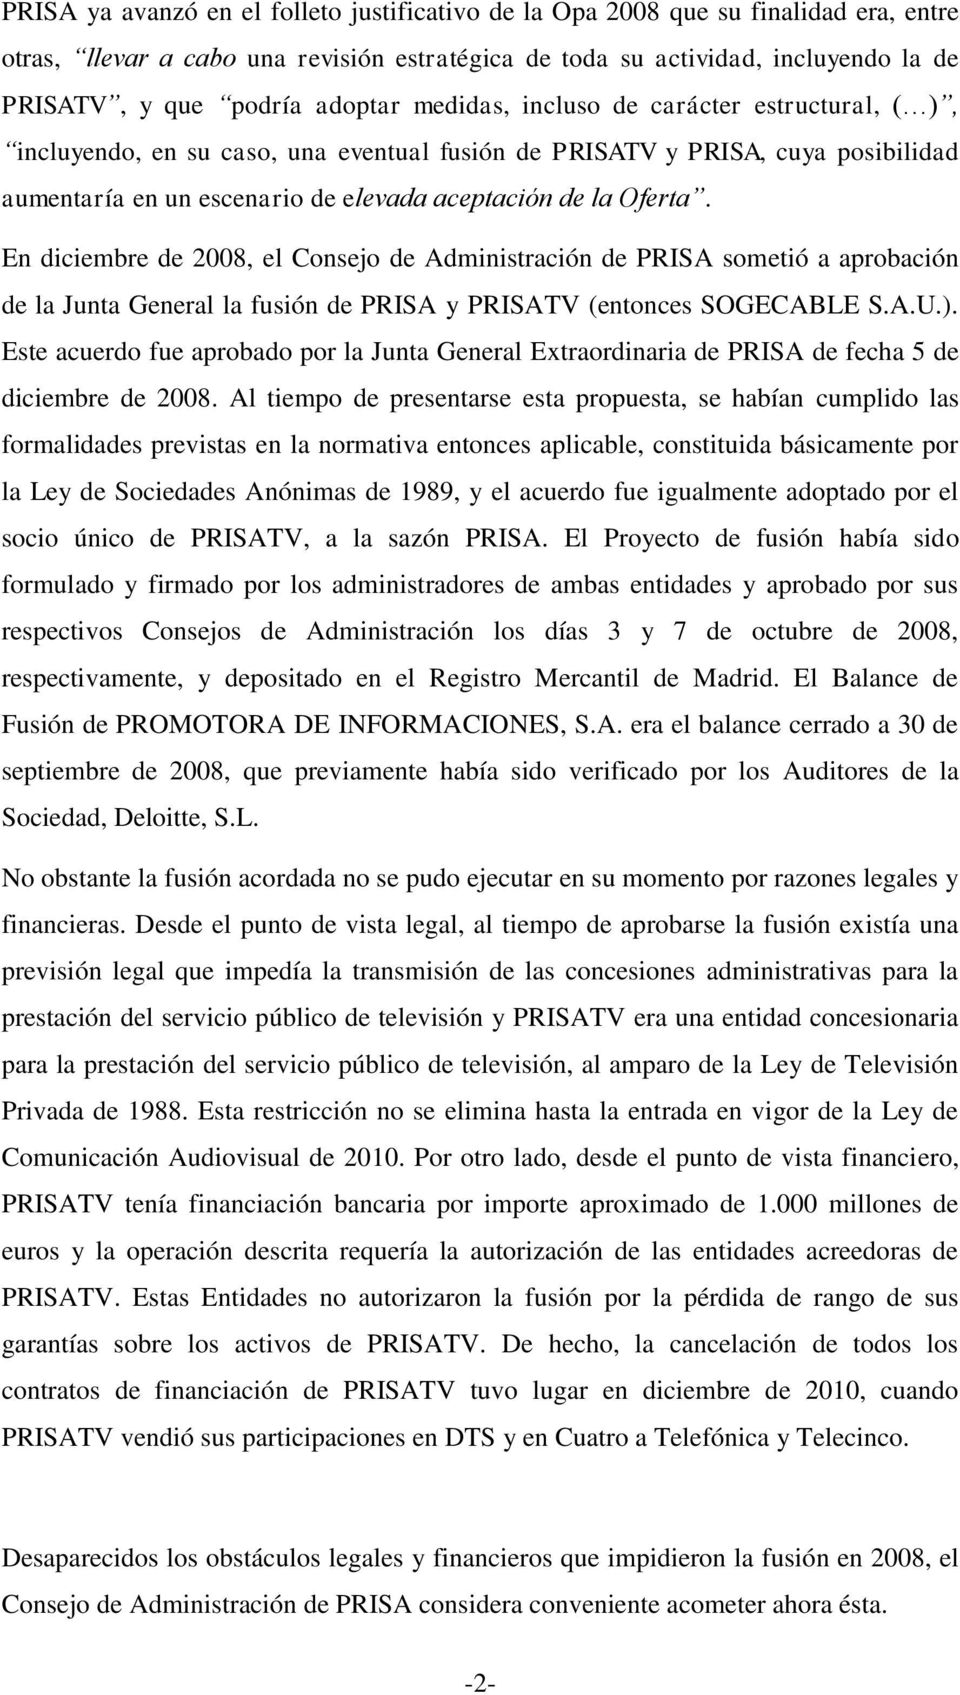 En diciembre de 2008, el Consejo de Administración de PRISA sometió a aprobación de la Junta General la fusión de PRISA y PRISATV (entonces SOGECABLE S.A.U.).